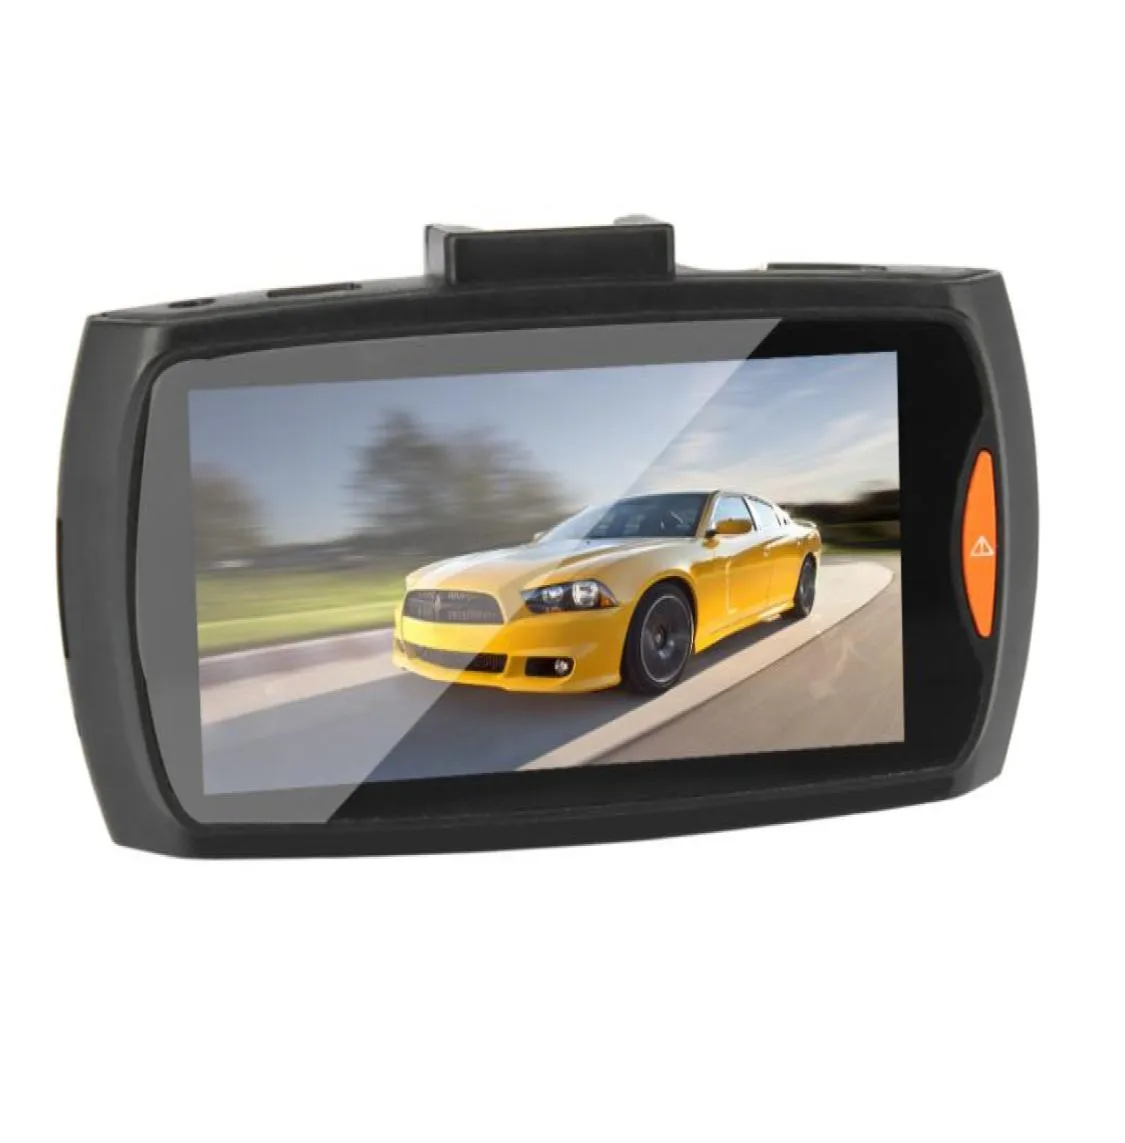 withretailbox車カメラG30 24quotフルHD 1080p車DVRビデオレコーダーダッシュカム120度広角運動検出ナイト1637446